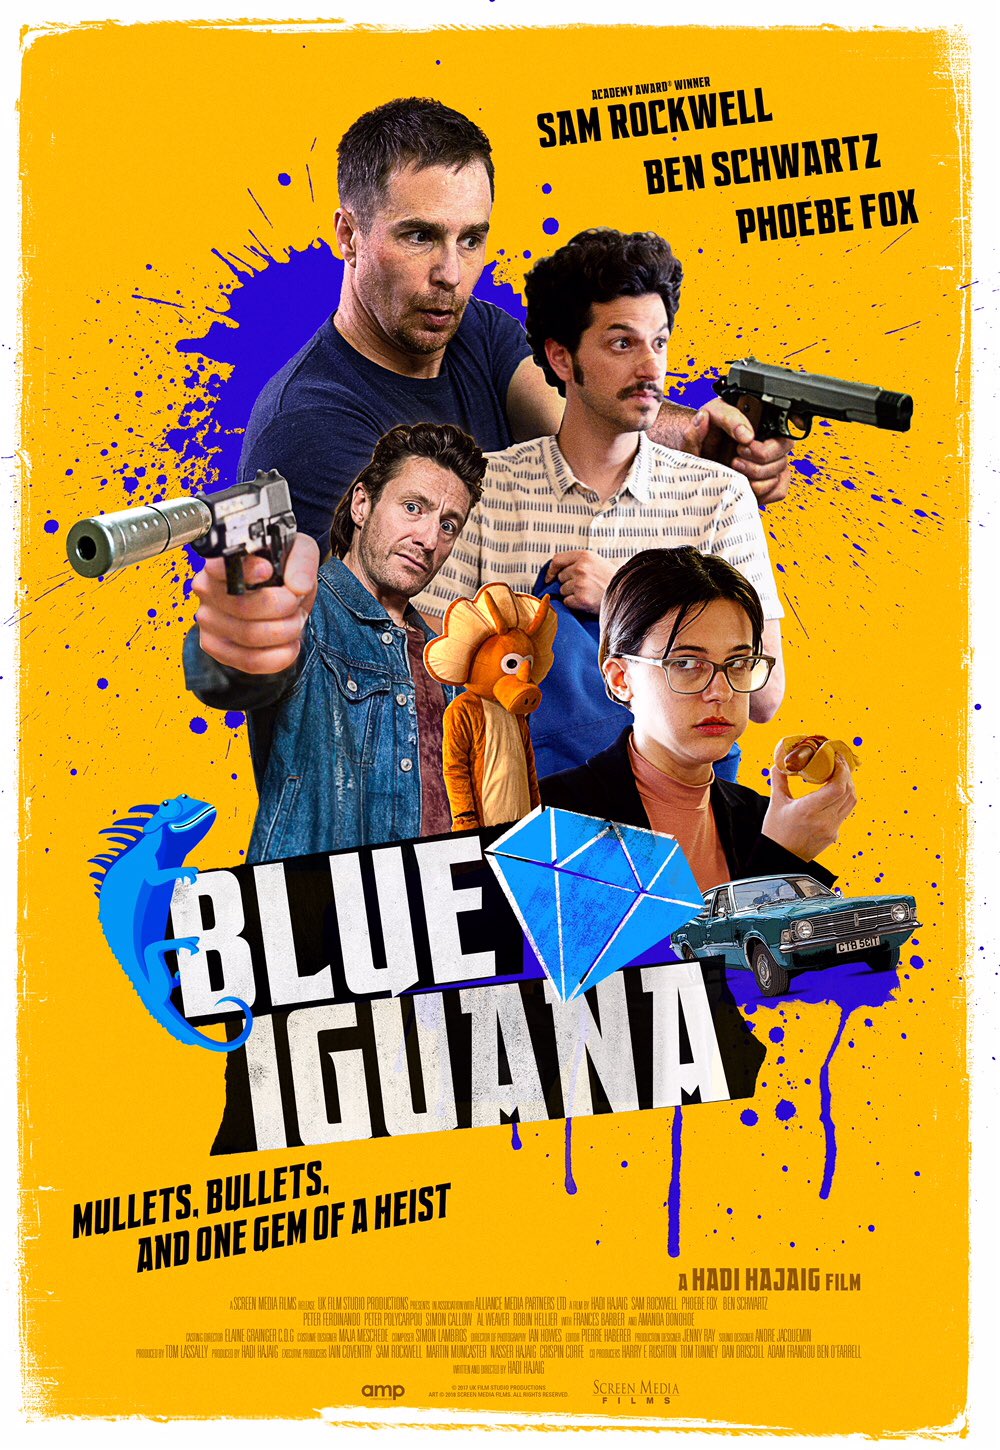 ดูหนังออนไลน์ฟรี Blue Iguana (2018) บลู อีกัวน่า หนังเต็มเรื่อง หนังมาสเตอร์ ดูหนังHD ดูหนังออนไลน์ ดูหนังใหม่